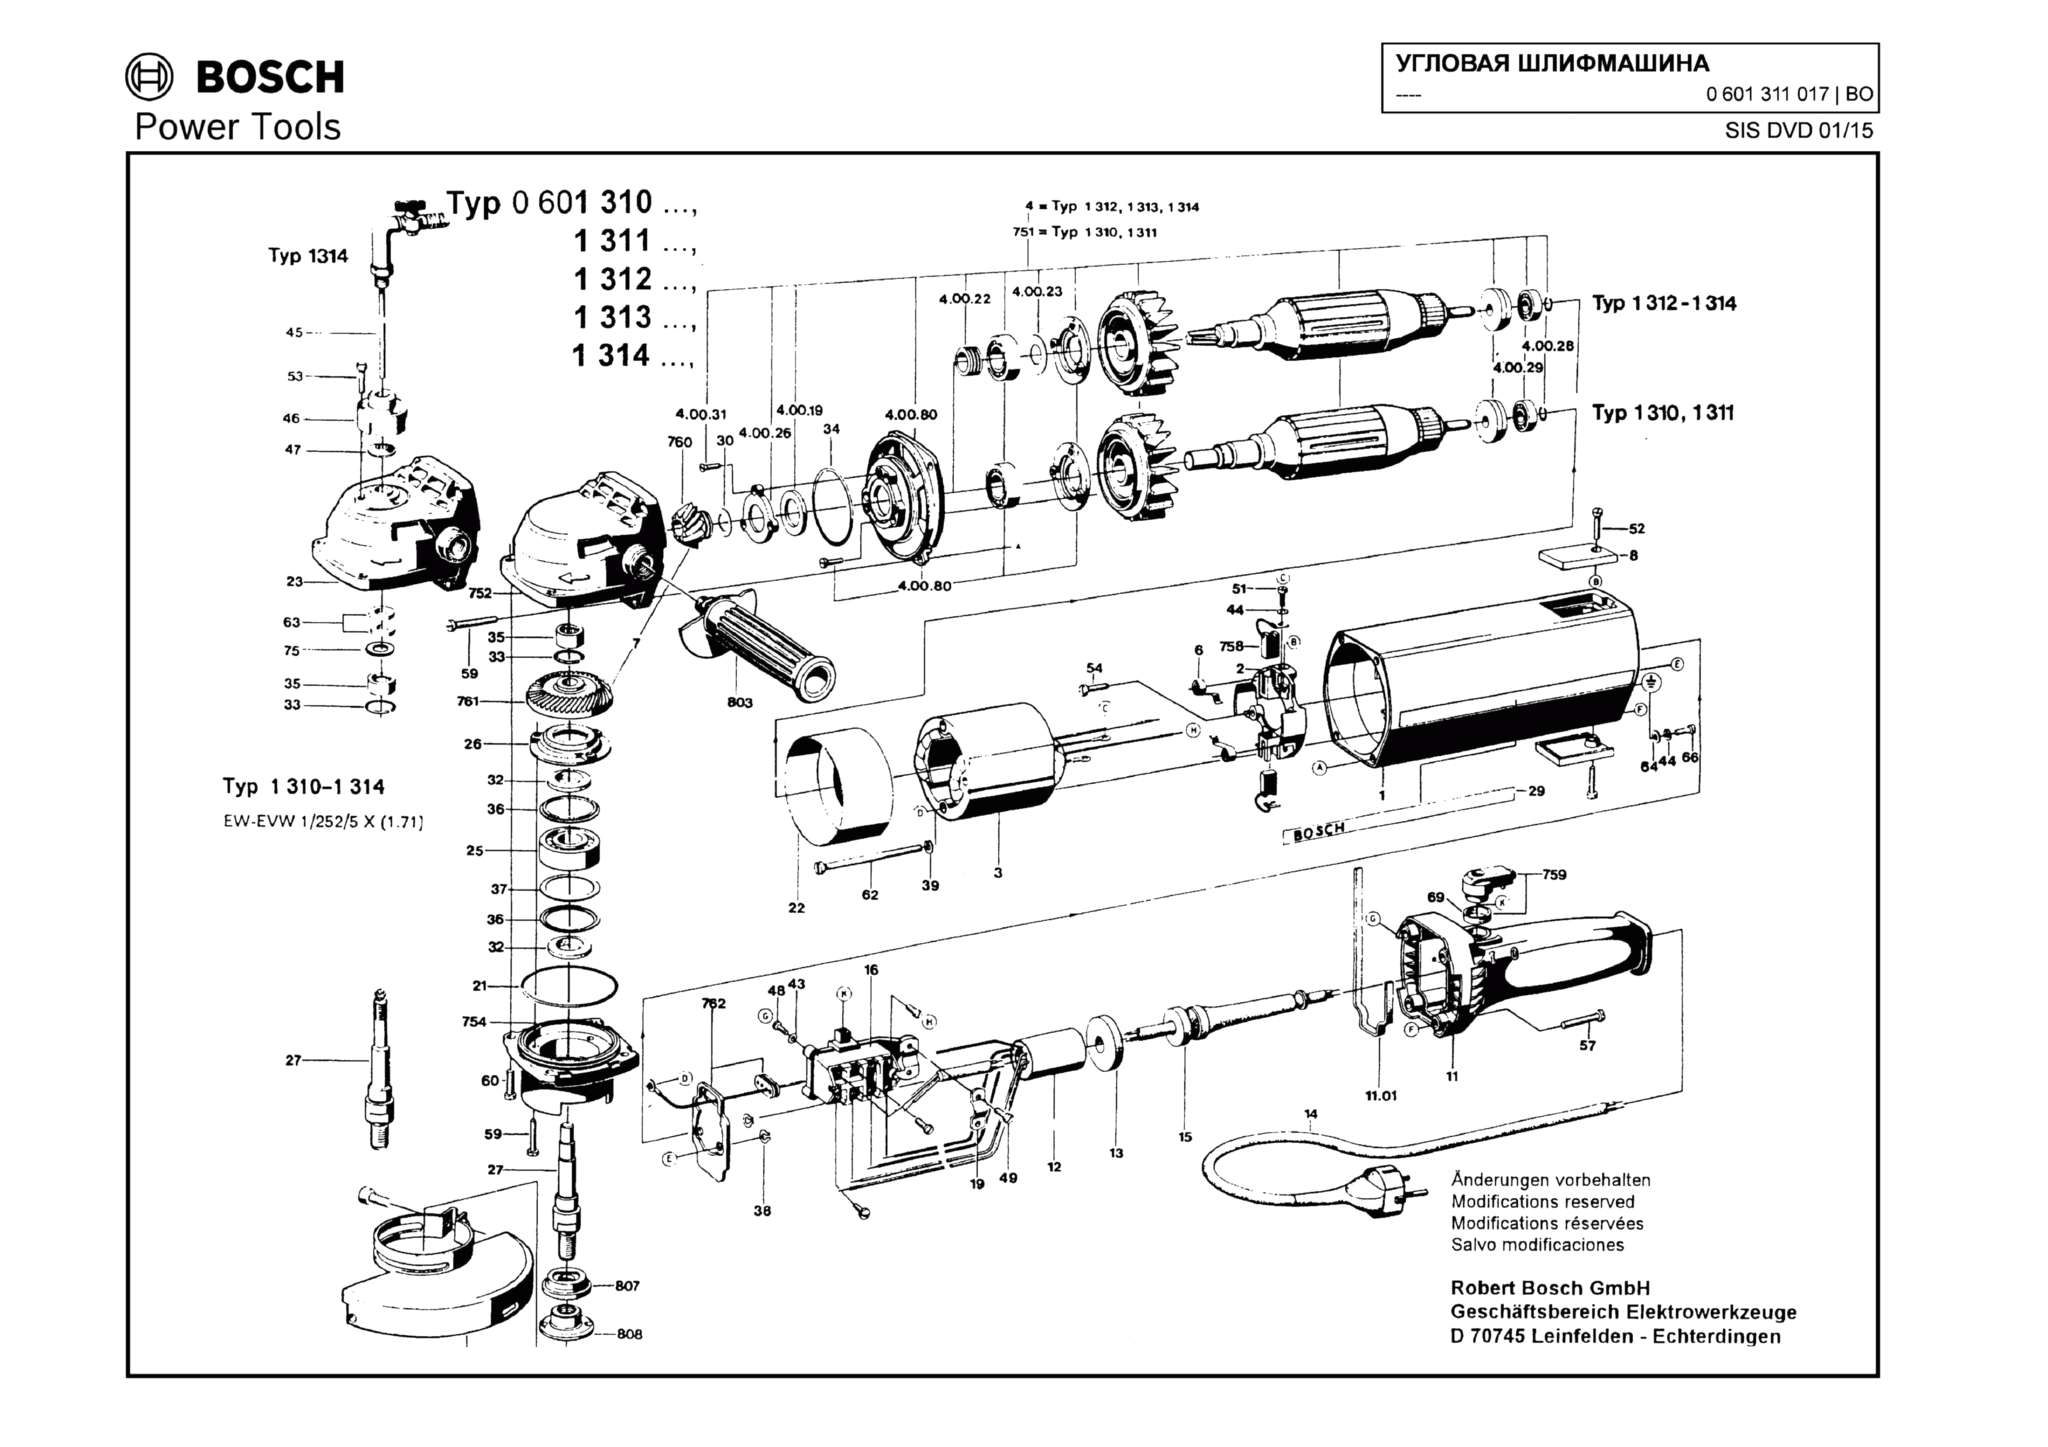 Запчасти, схема и деталировка Bosch (ТИП 0601311017)